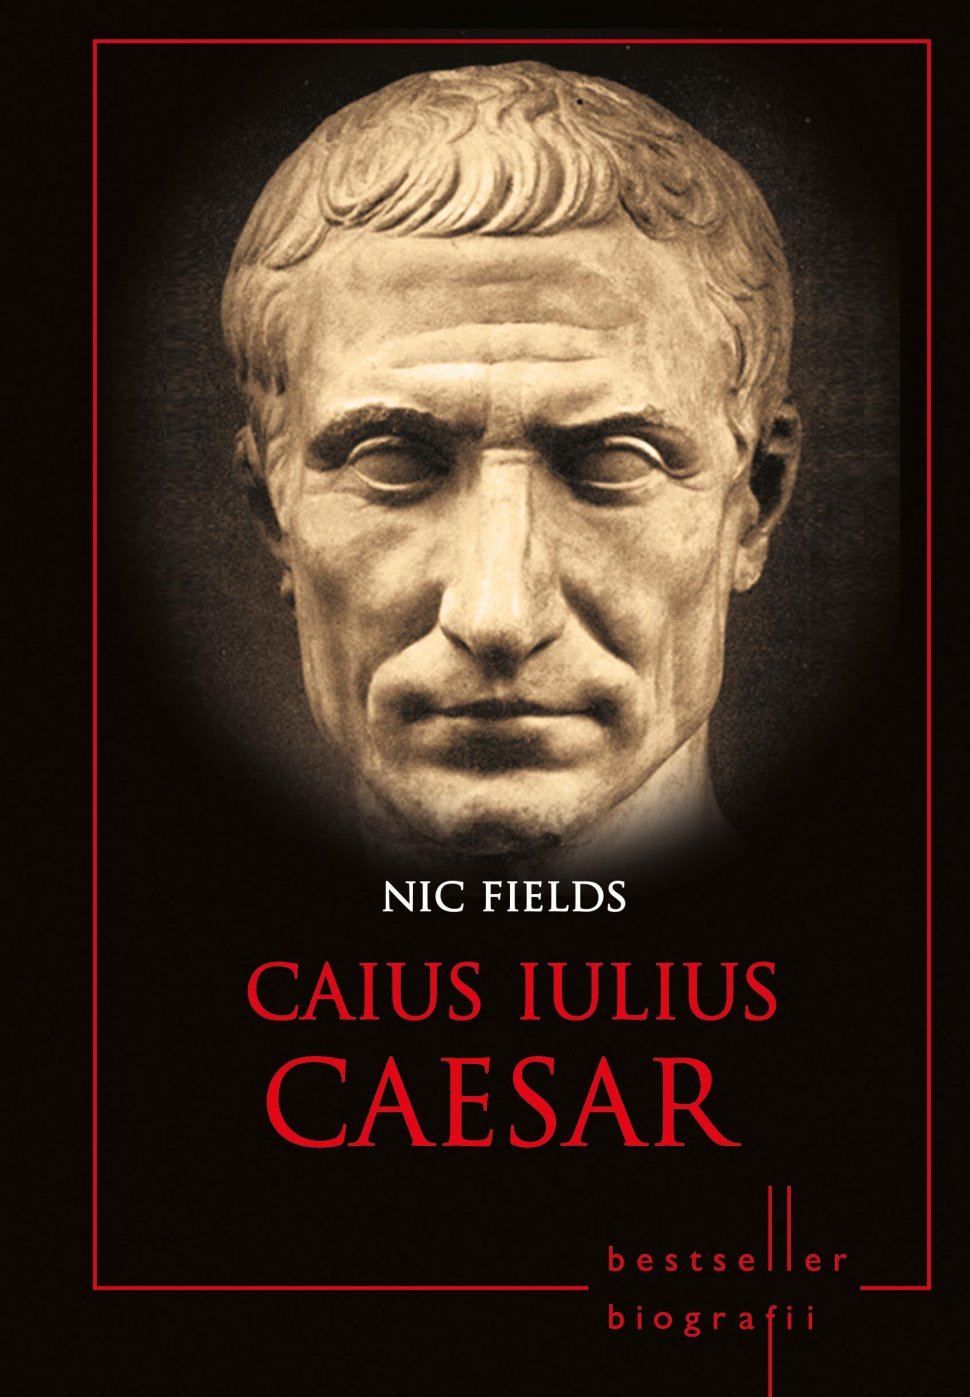 Caius Iulius Caesar, ultimul volum al colecţiei Bestseller Biografii